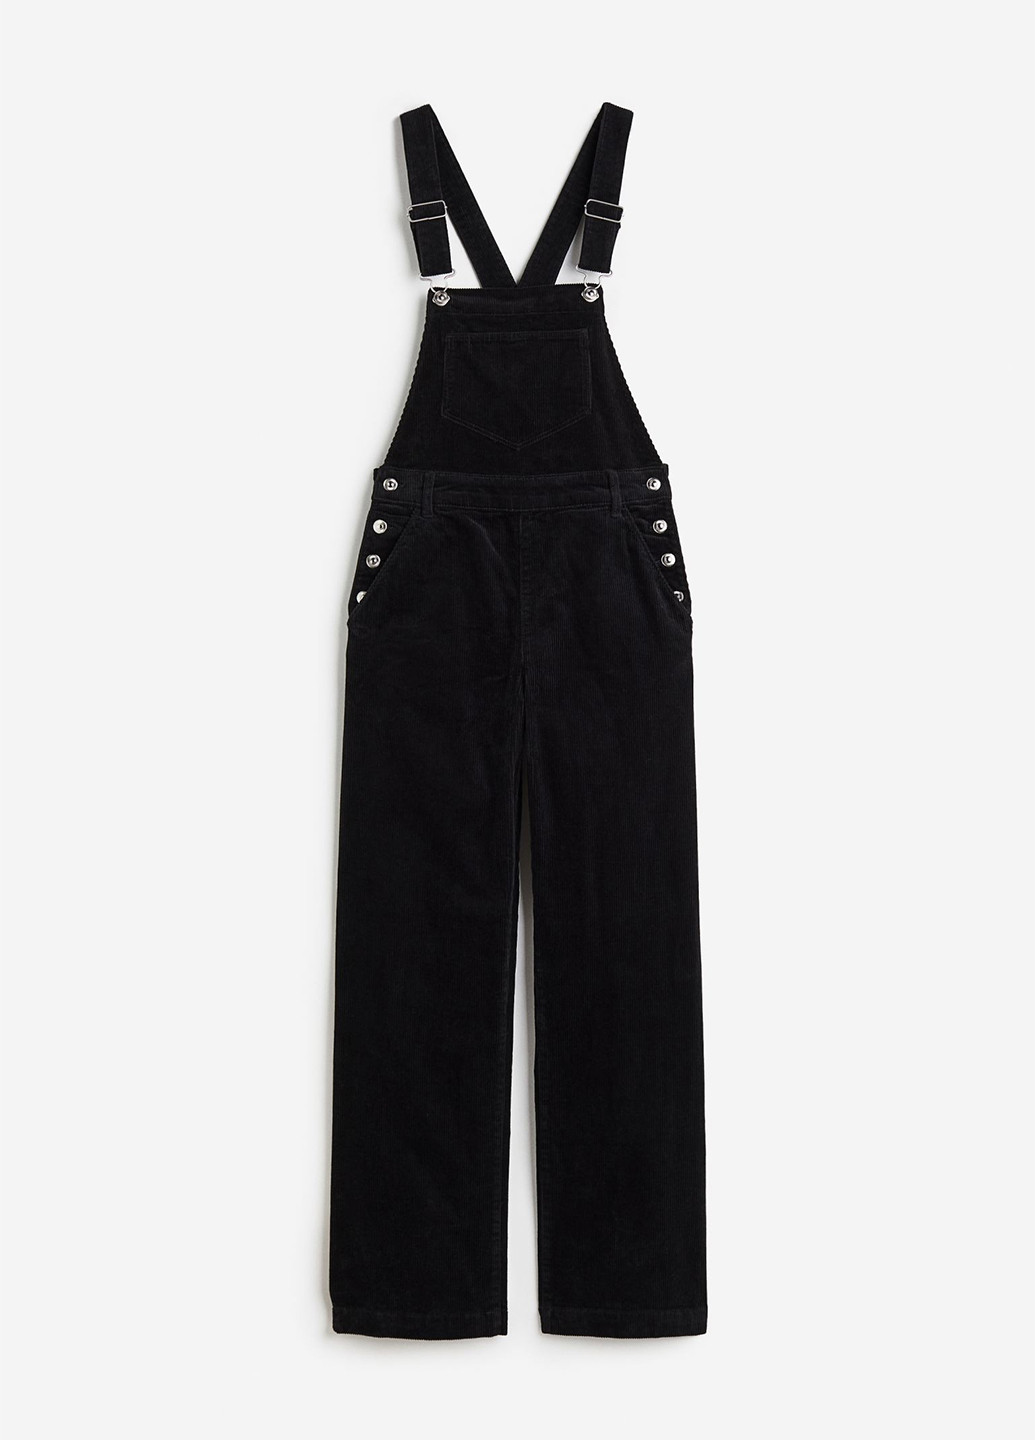 Комбинезон H&M комбинезон-брюки однотонный чёрный кэжуал хлопок, вельвет